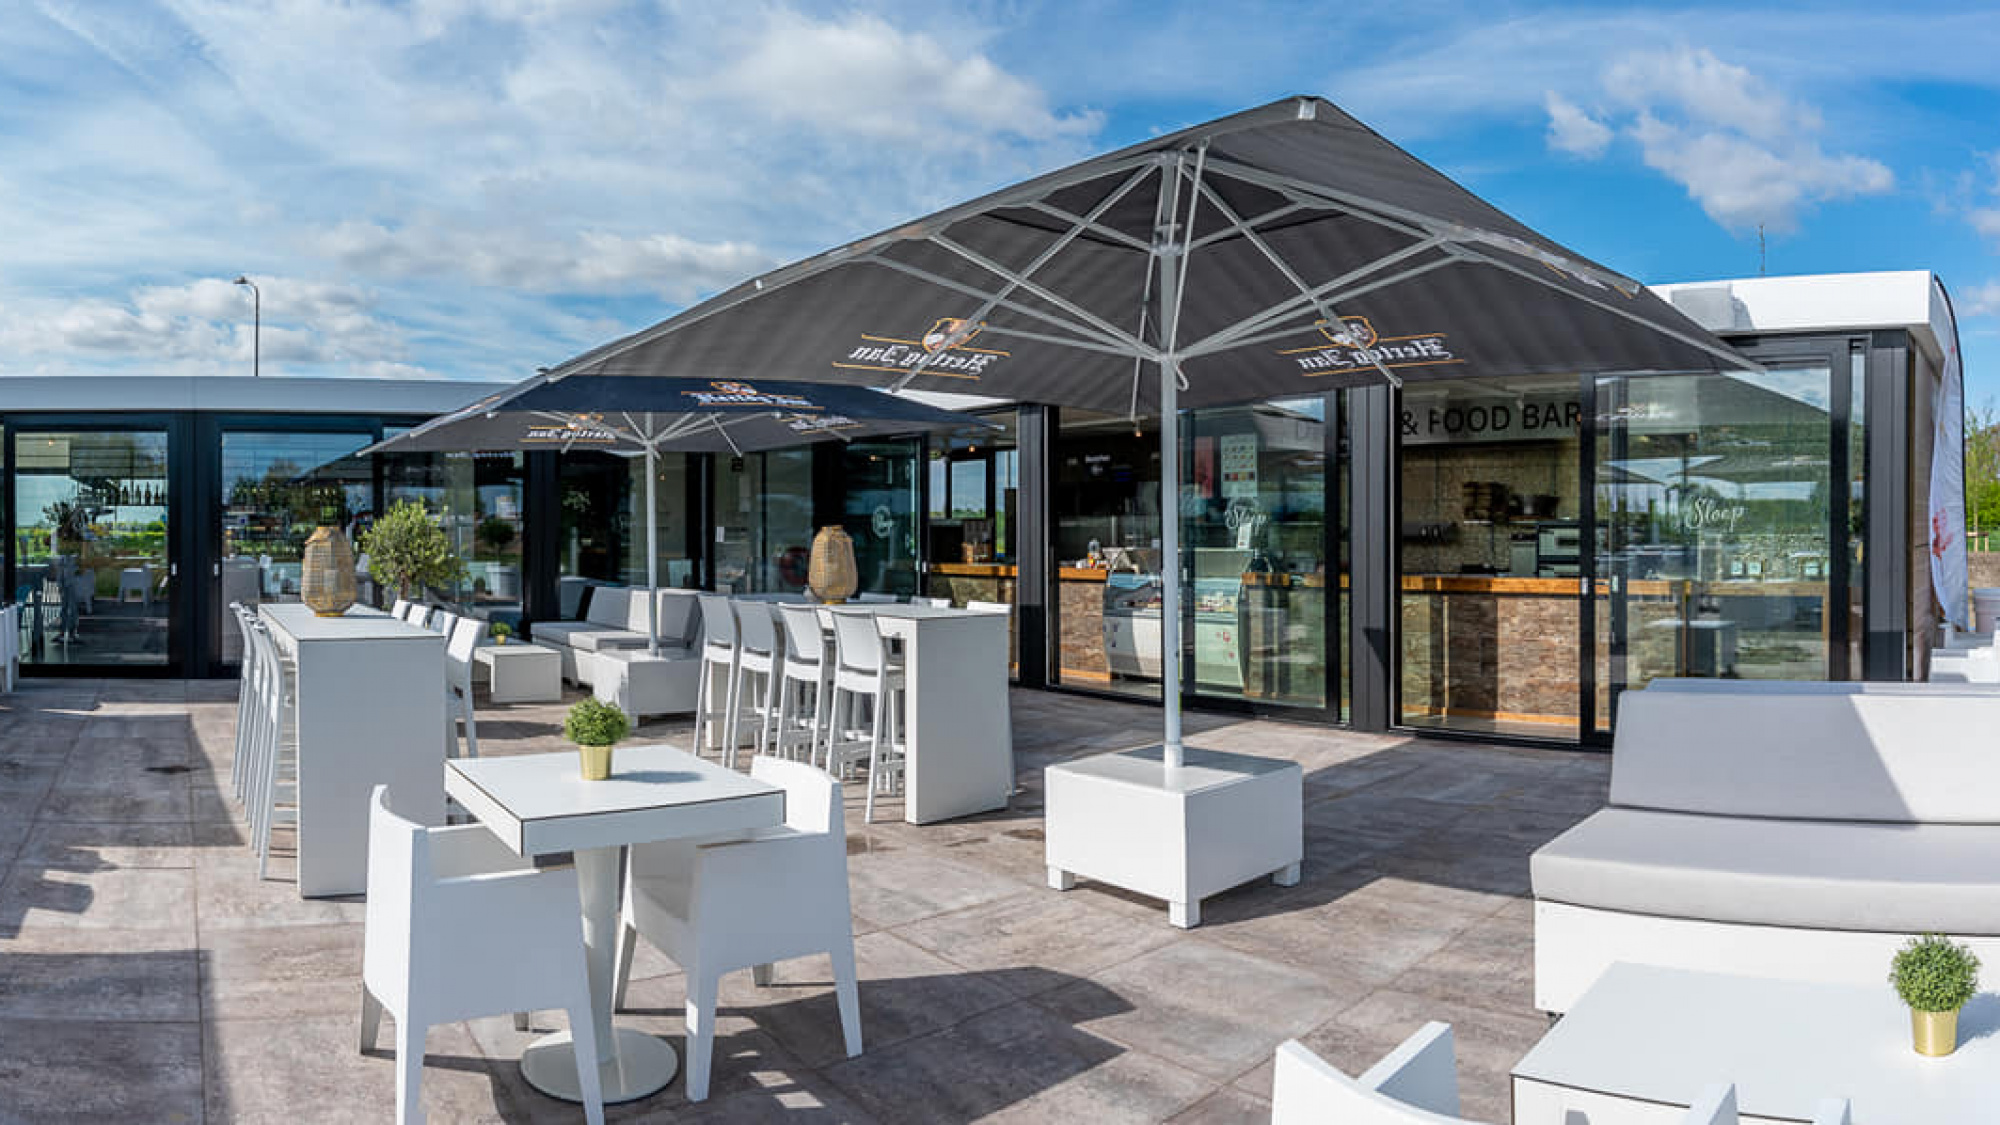 Eetcafé de Sloep aan de jachthaven | Hotel Biesbosch